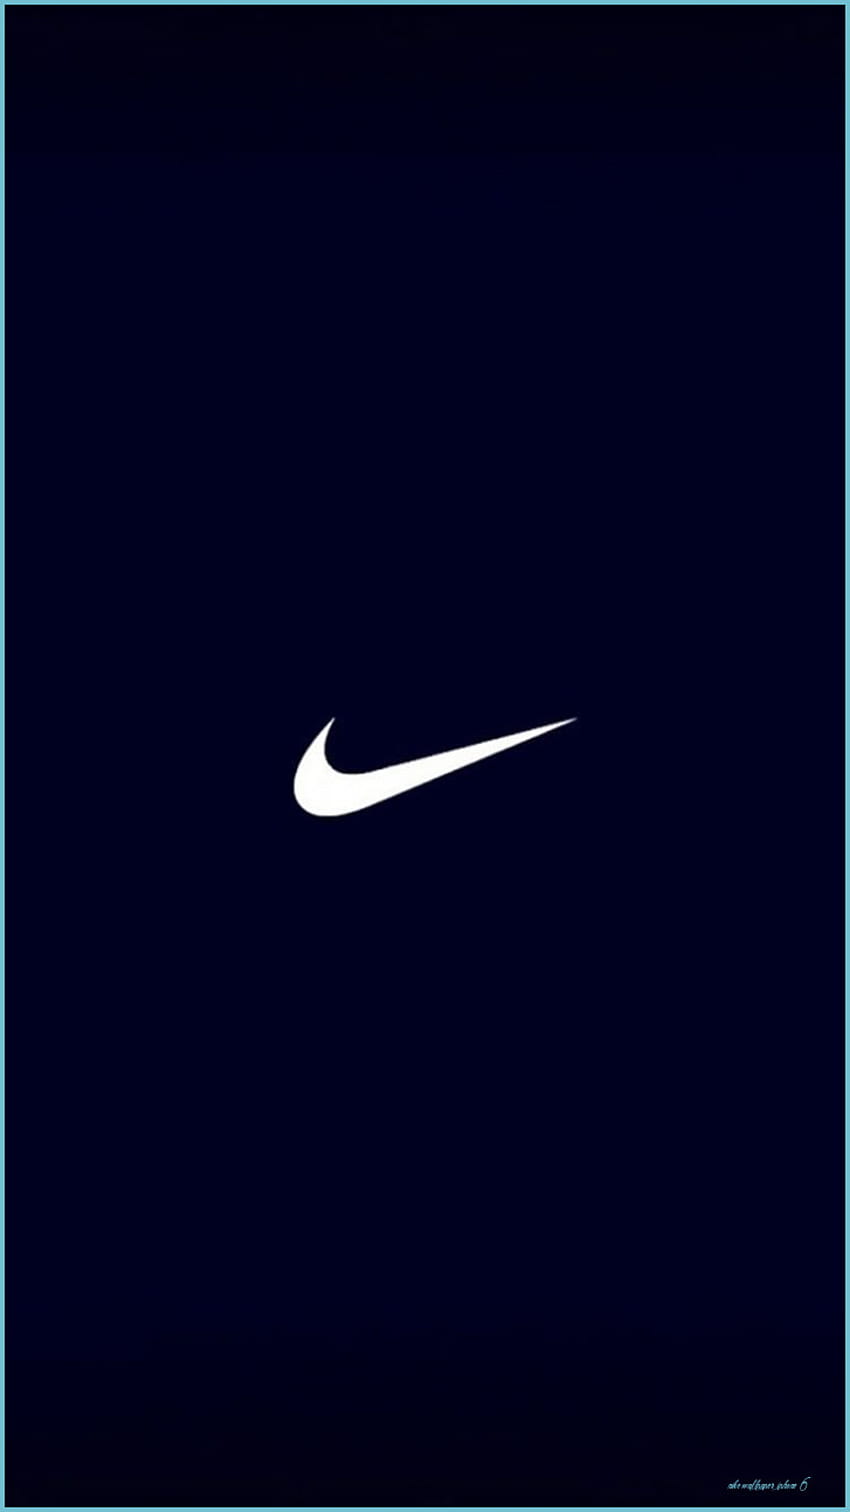 Nike IPhone - Top Nike IPhone Background - Nike iPhone 6, iPhone 11 ...